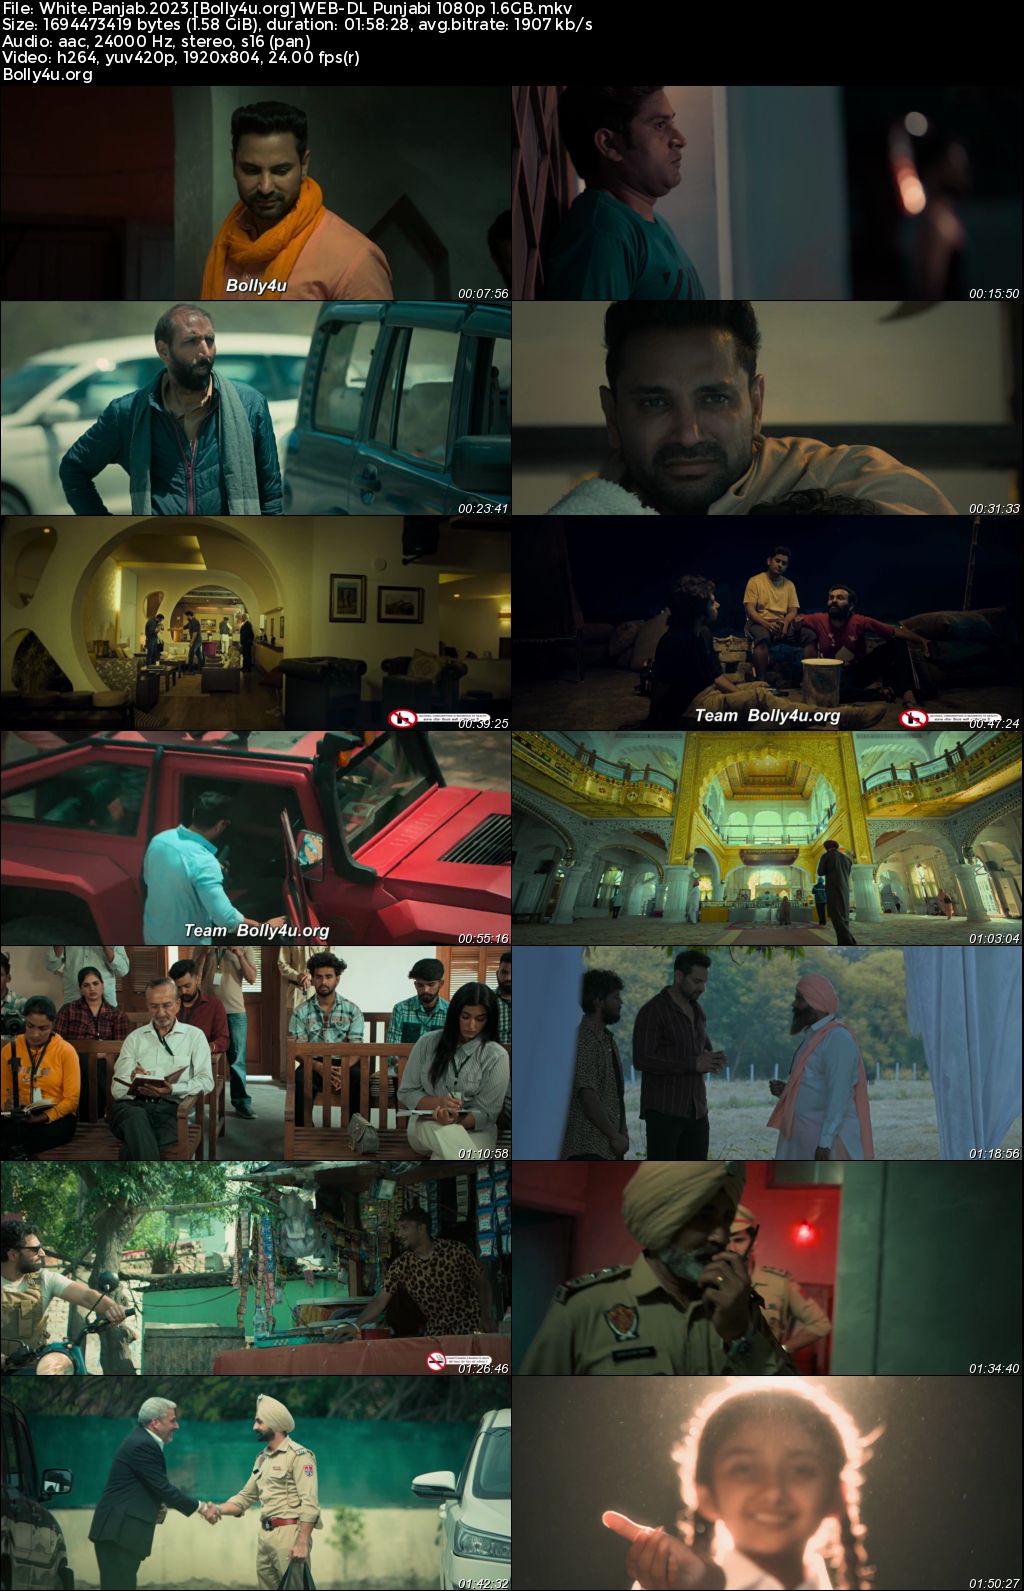 White Punjab 2023 WEB-DL Punjabi Full Movie Download 1080p 720p 480p